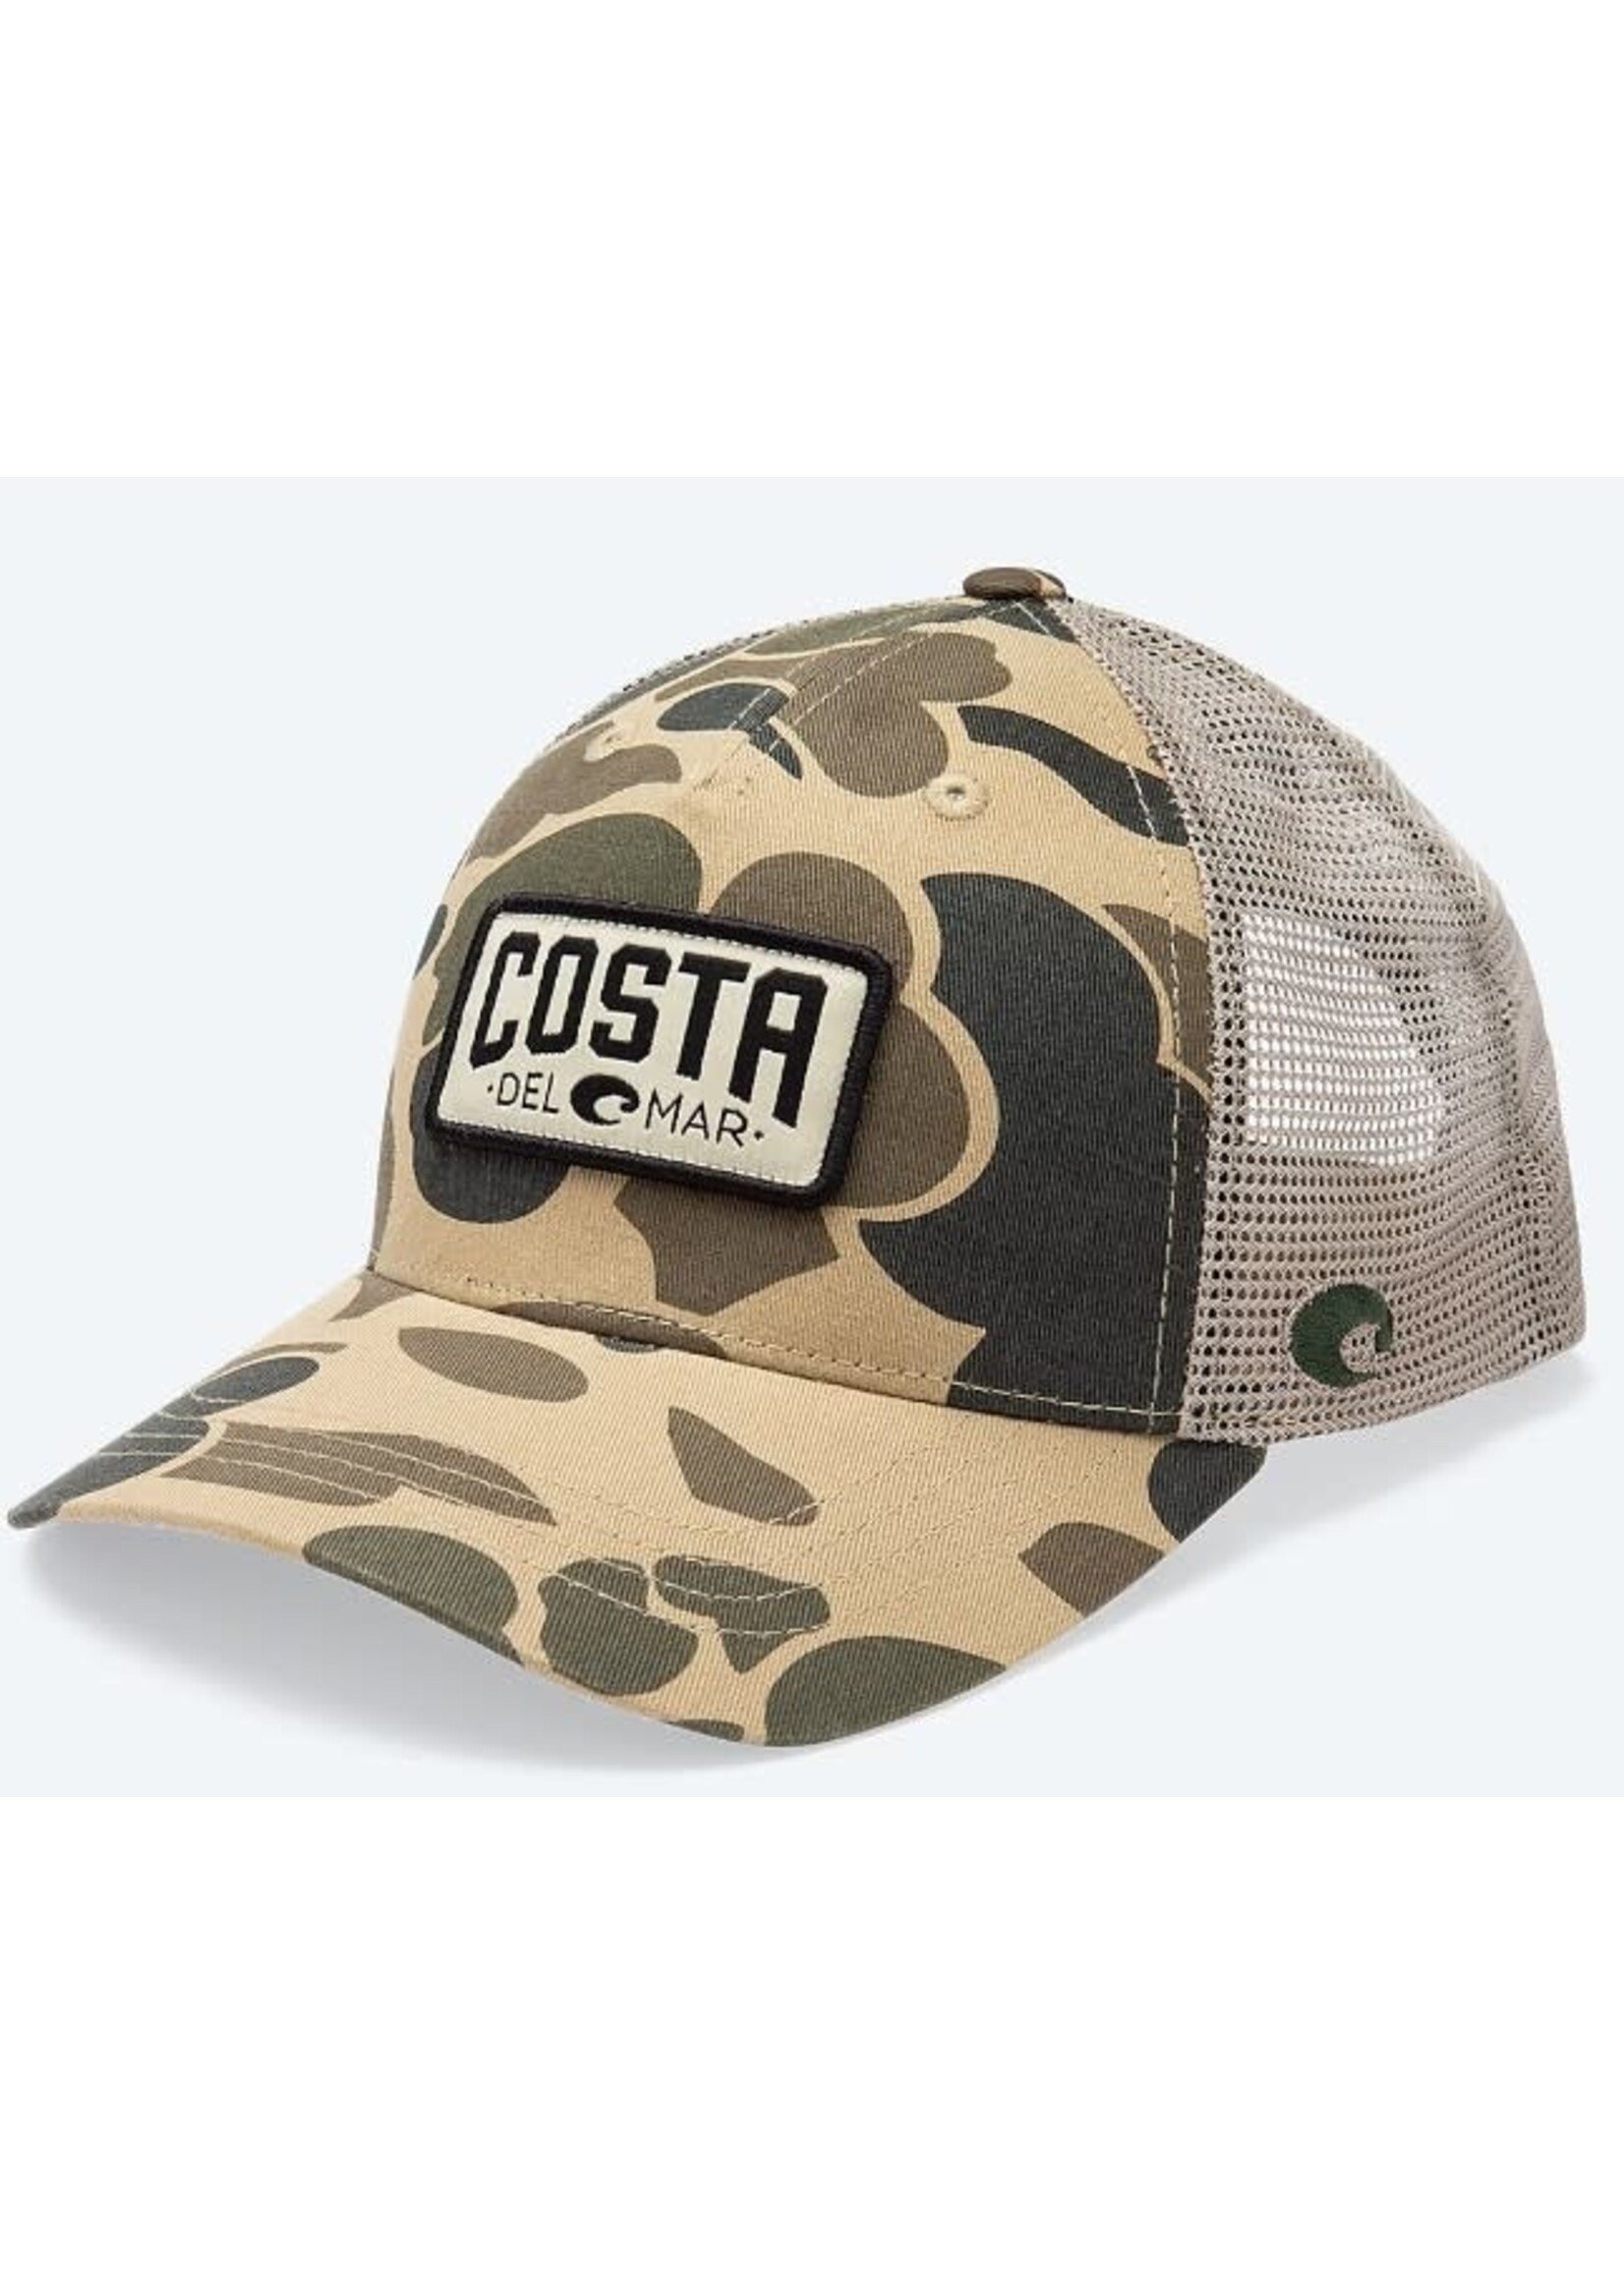 Costa Duck Camo Hat